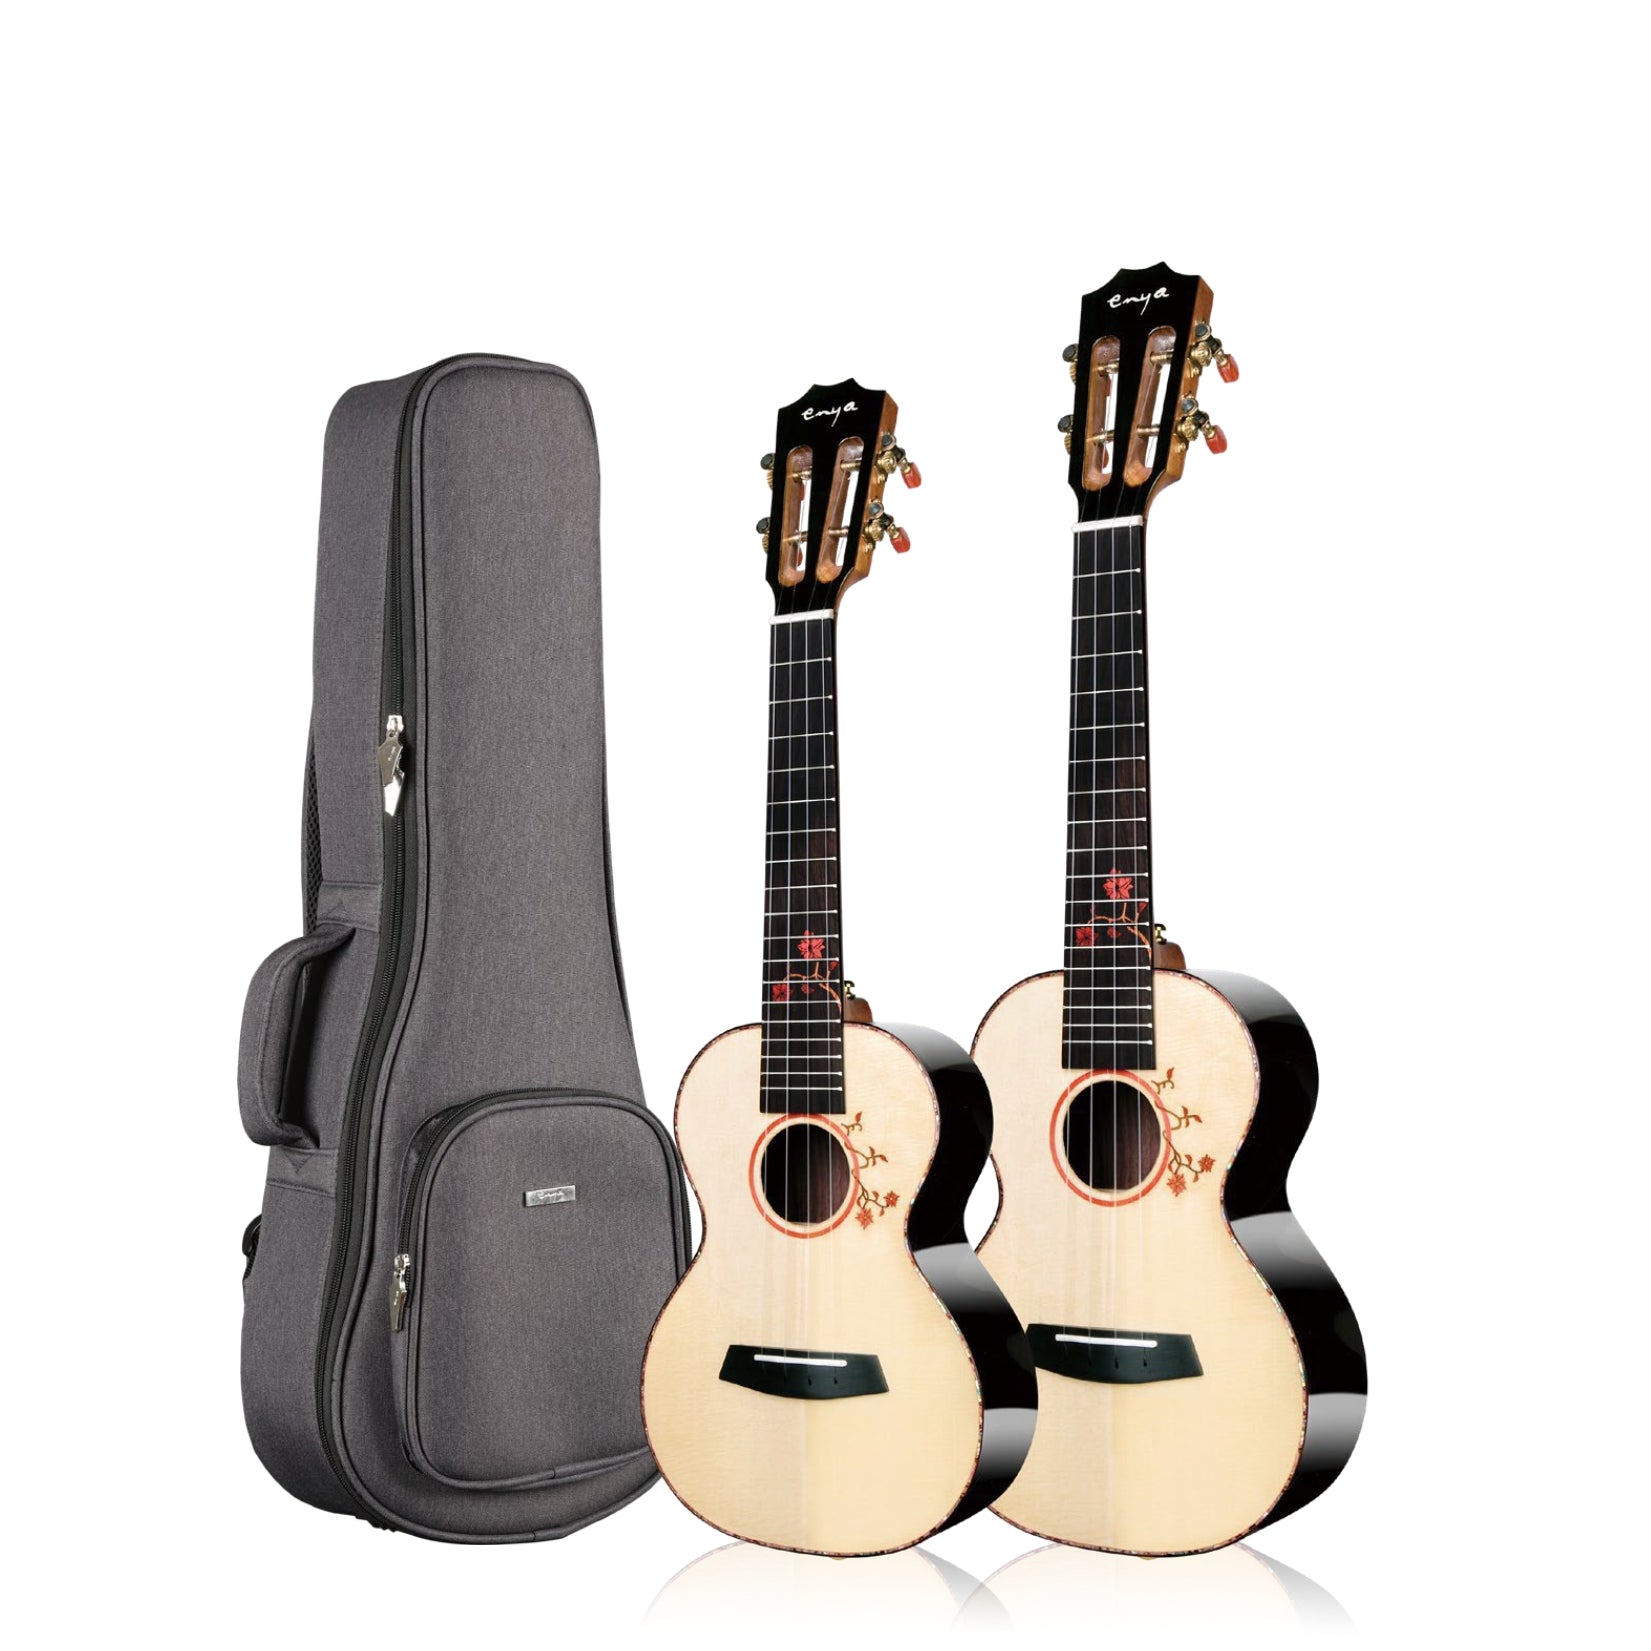 S1, Premium all-solid luxury ukulele